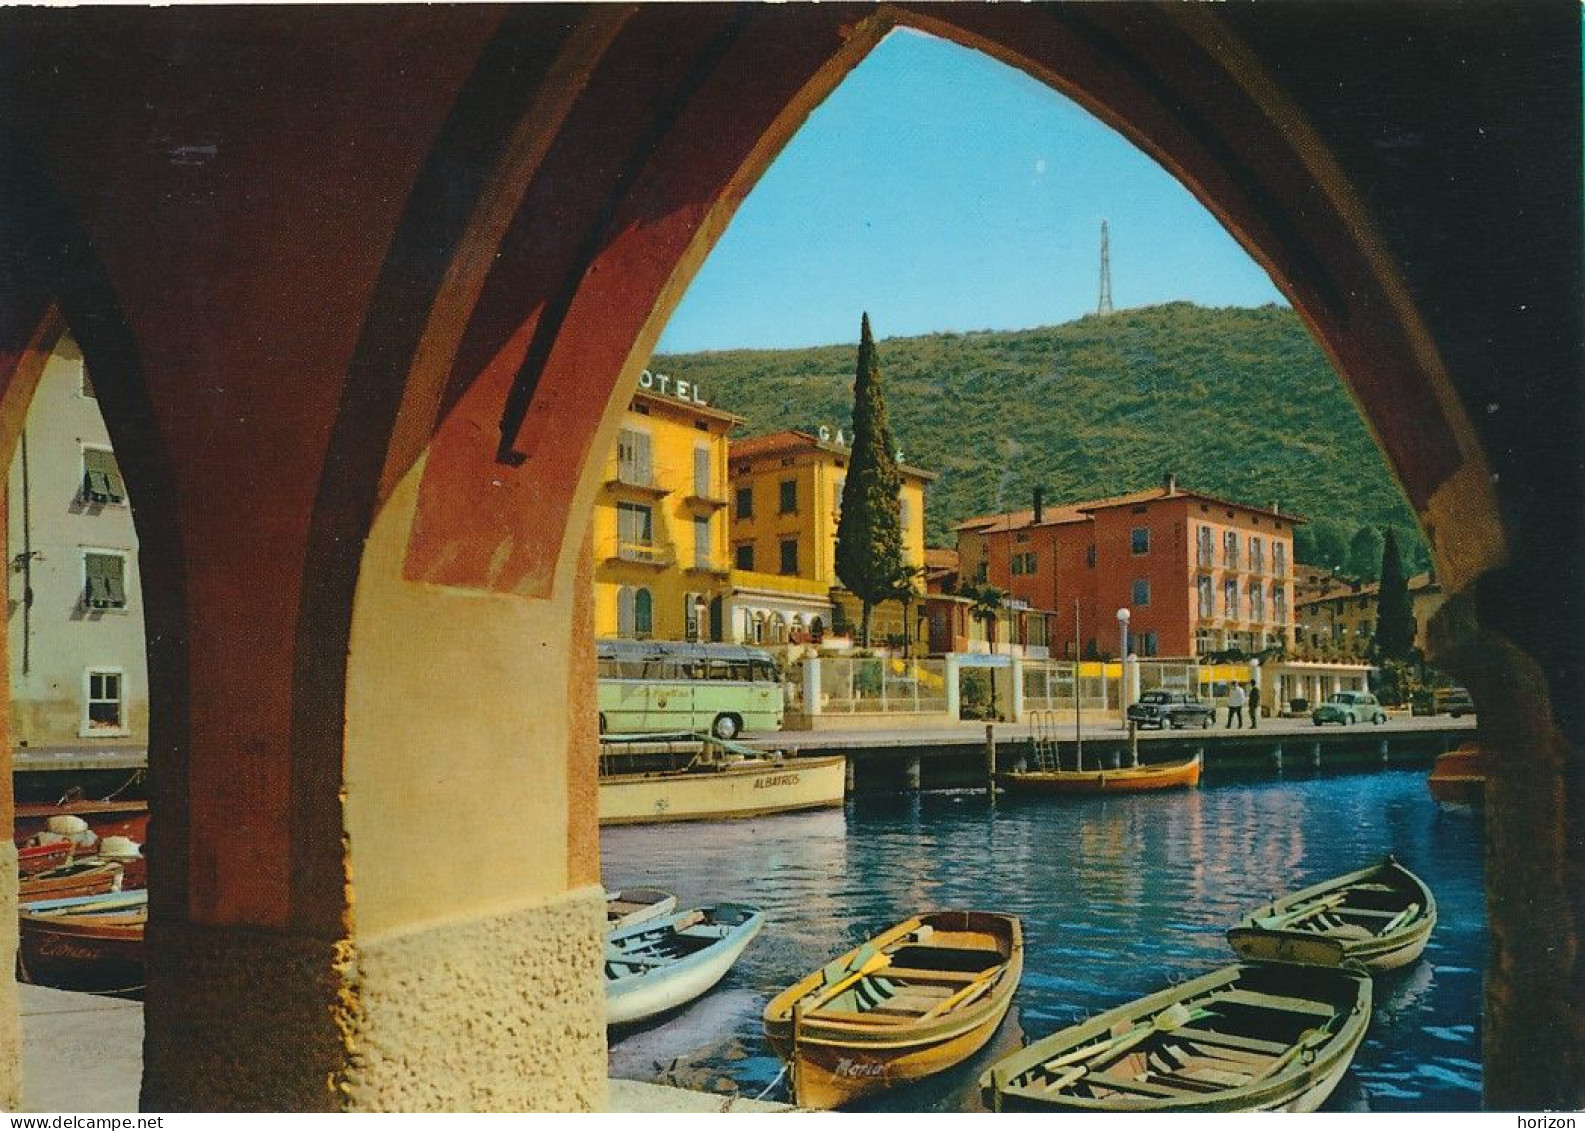 g.934   Lago di Garda - TORBOLE - Trento - Lotto di 16 cartoline f.to grande